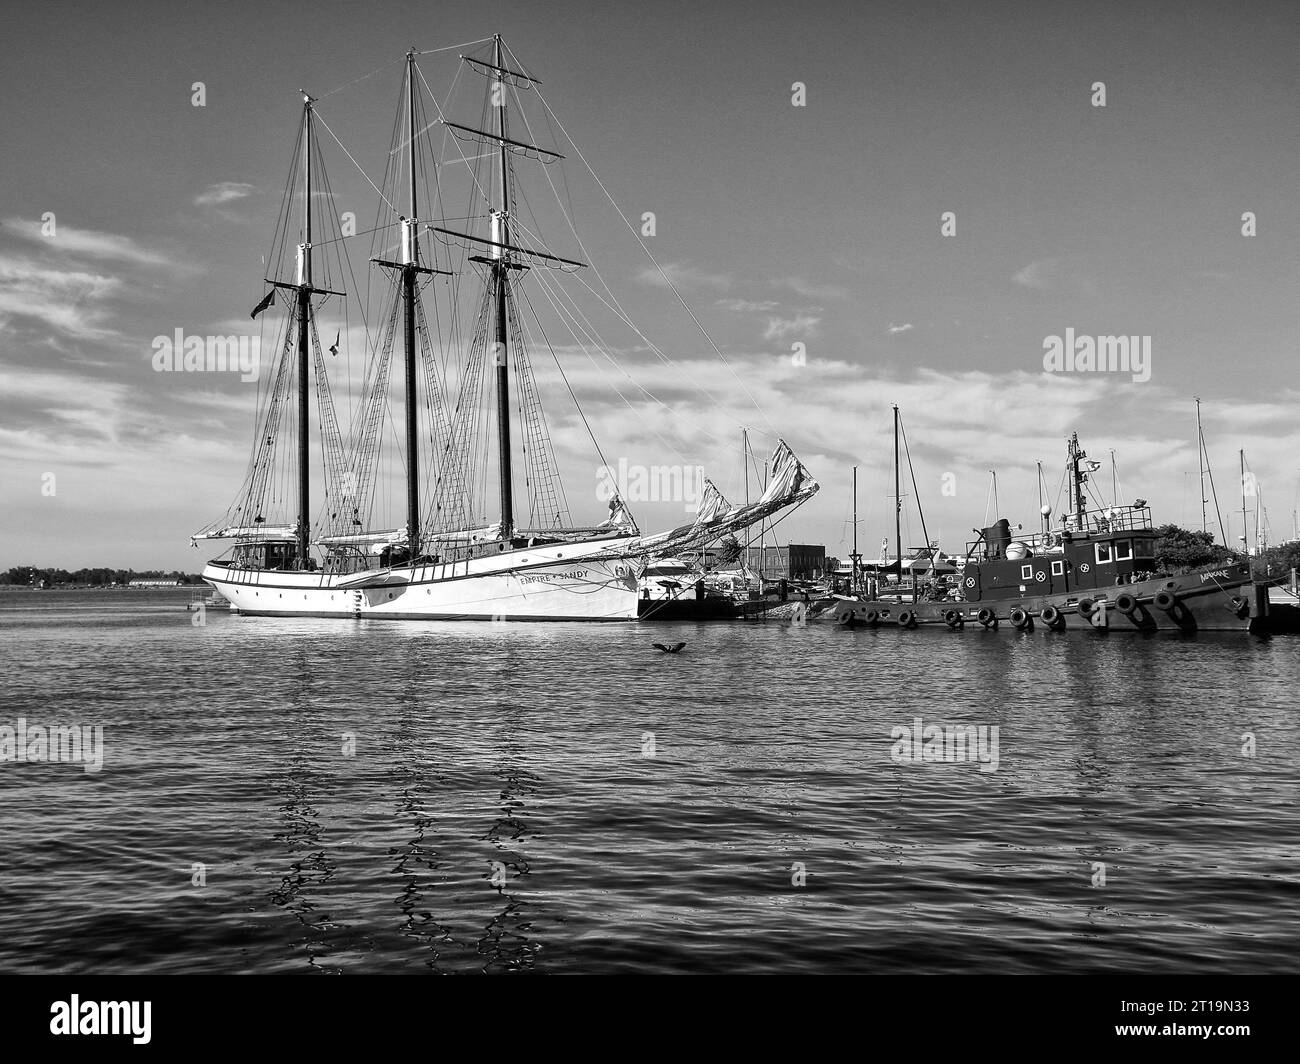 L'Historic Schooner EMPIRE SANDY, achevé en 1943 et connu un service étendu pendant la Seconde Guerre mondiale. Sert maintenant de bateau charter à Toronto, Canada. Banque D'Images